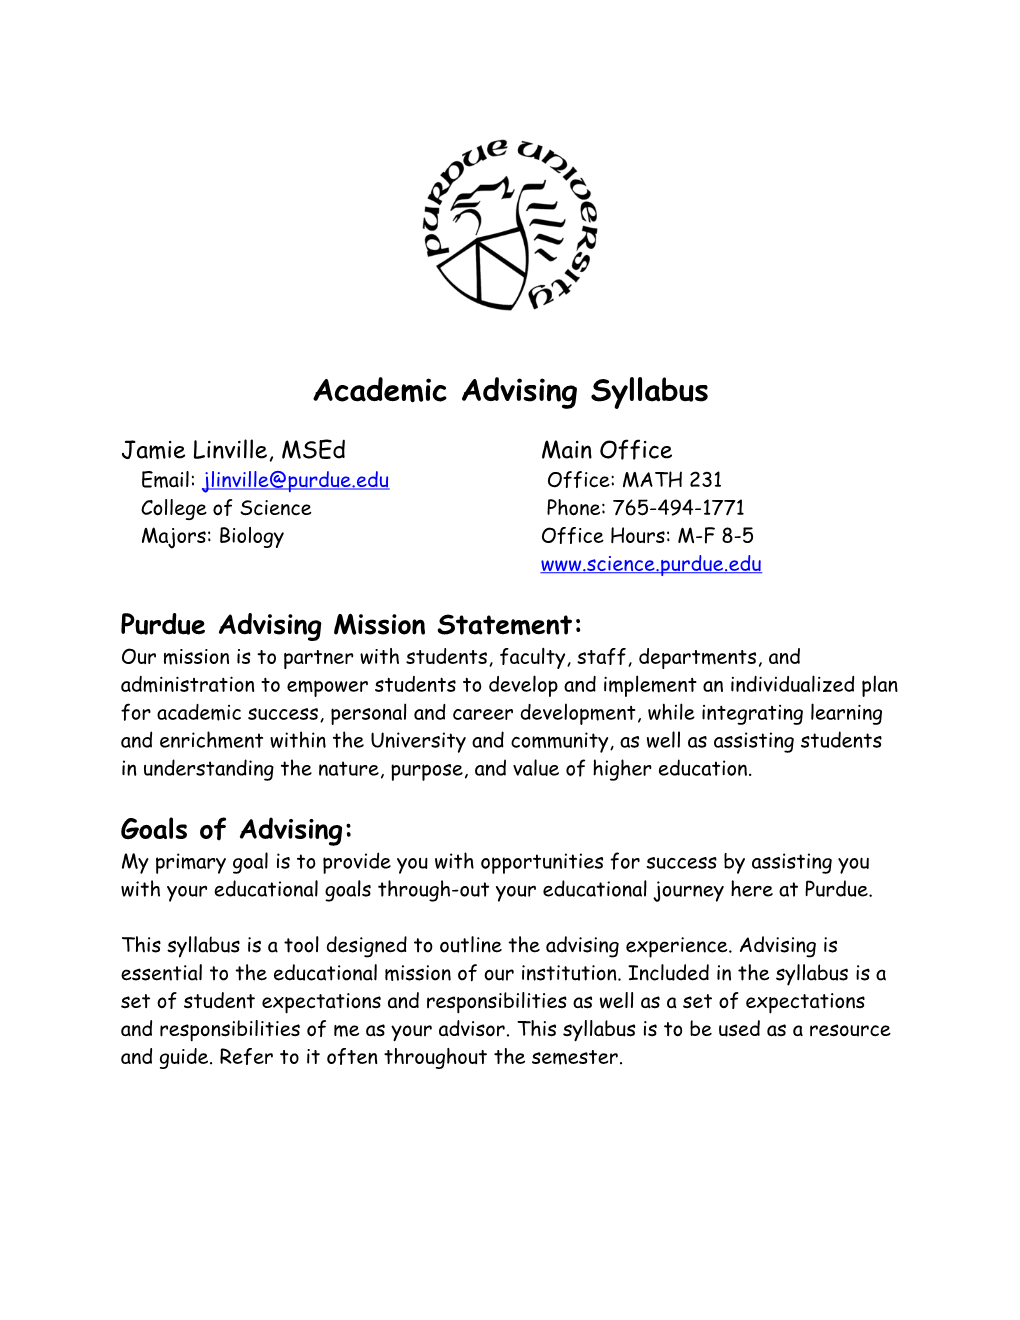 Academic Advising Syllabus s1